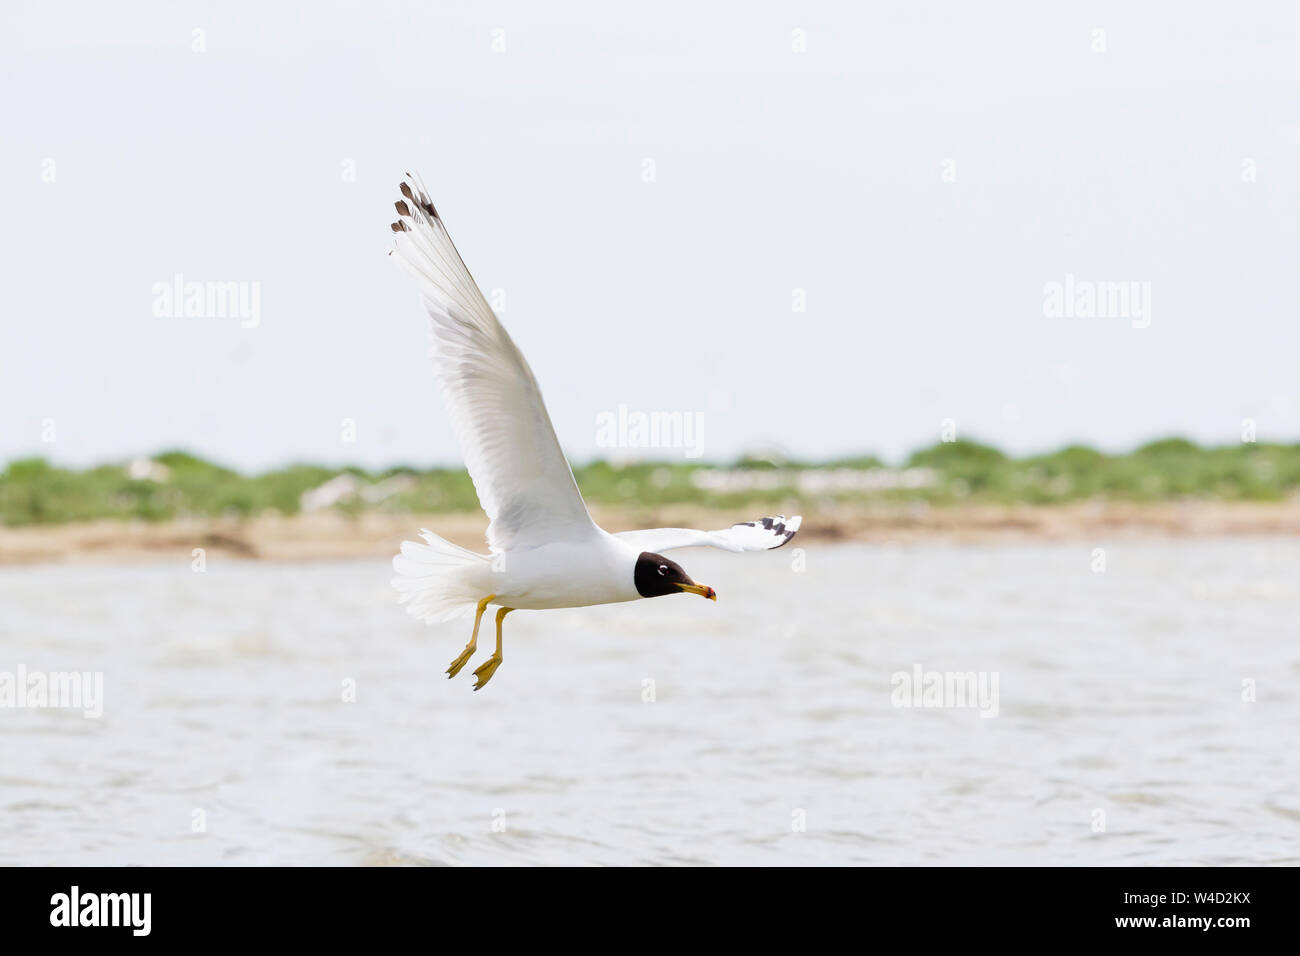 Pallas's gull flying against  blue sky Stock Photo